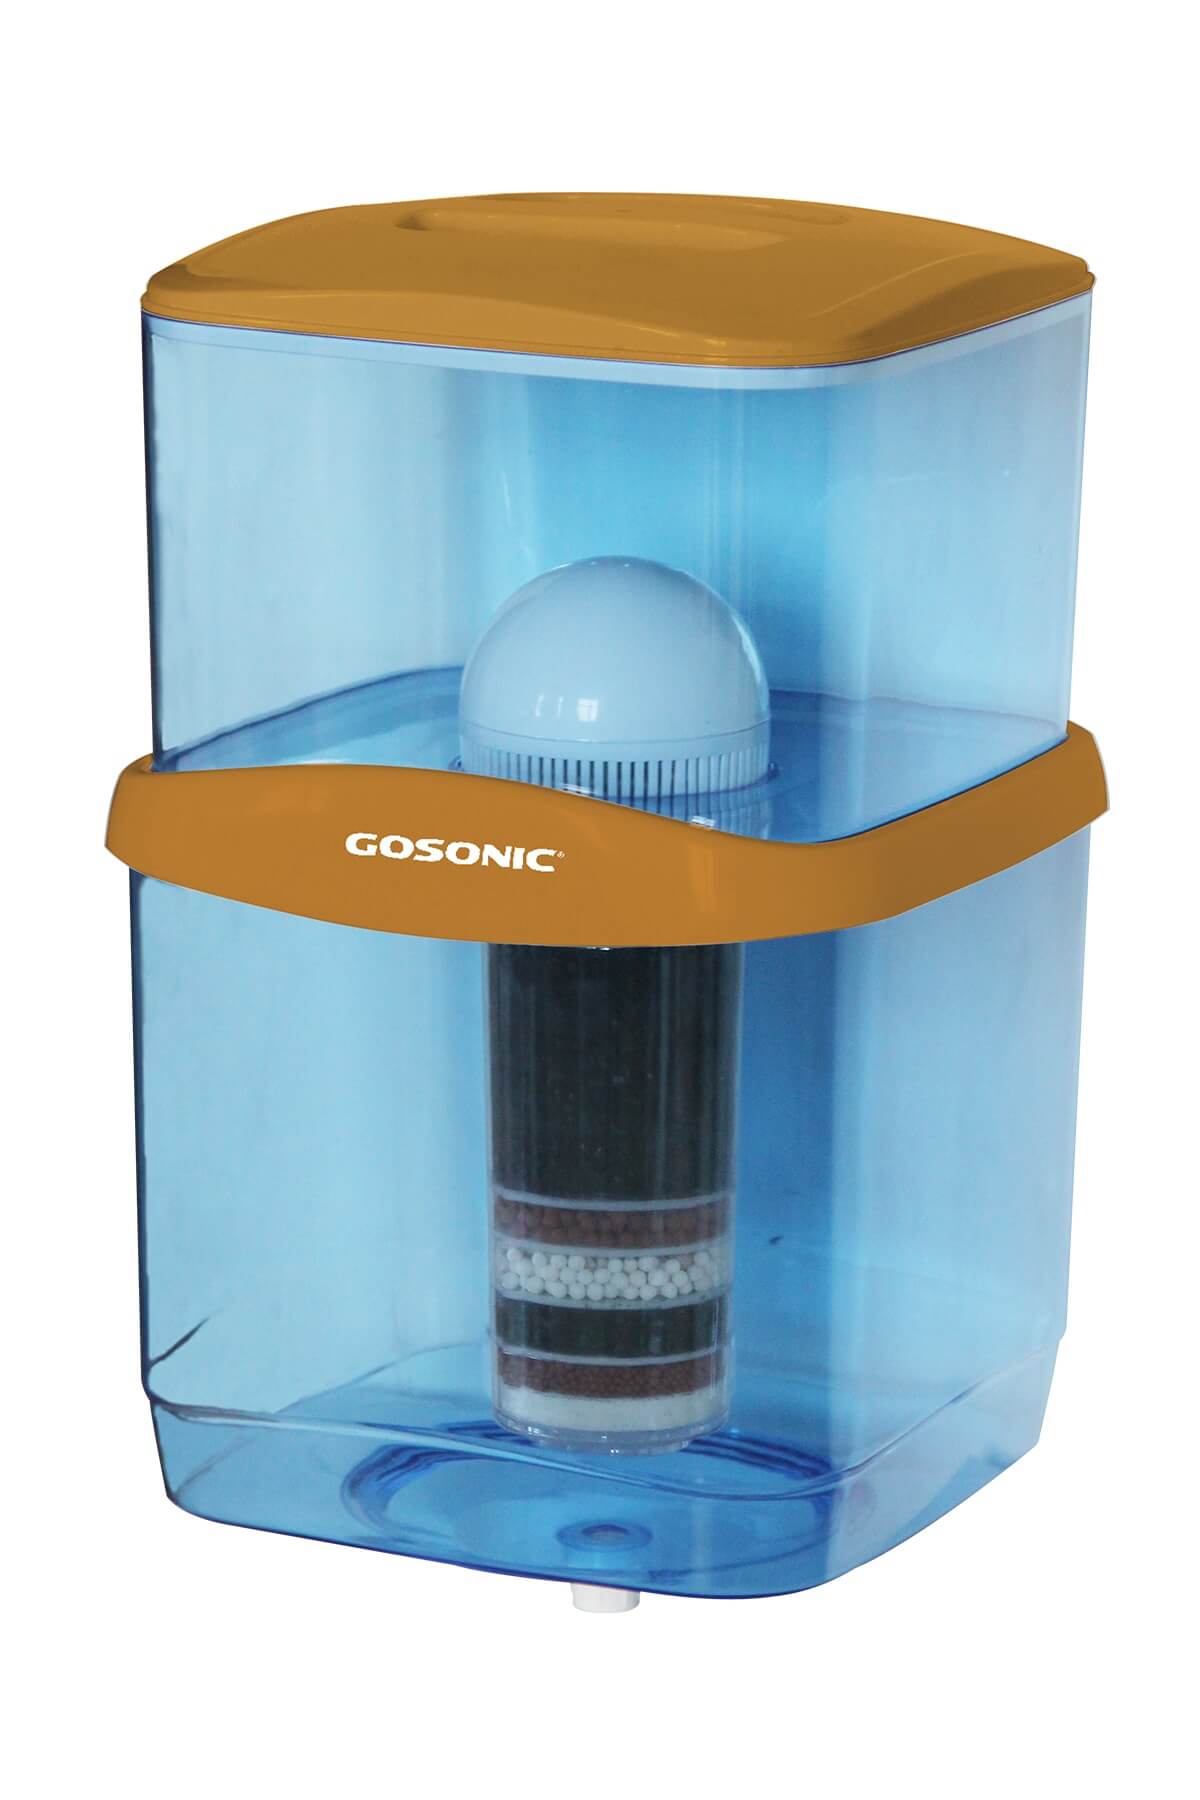 Gosonic Su Arıtma Cihazı